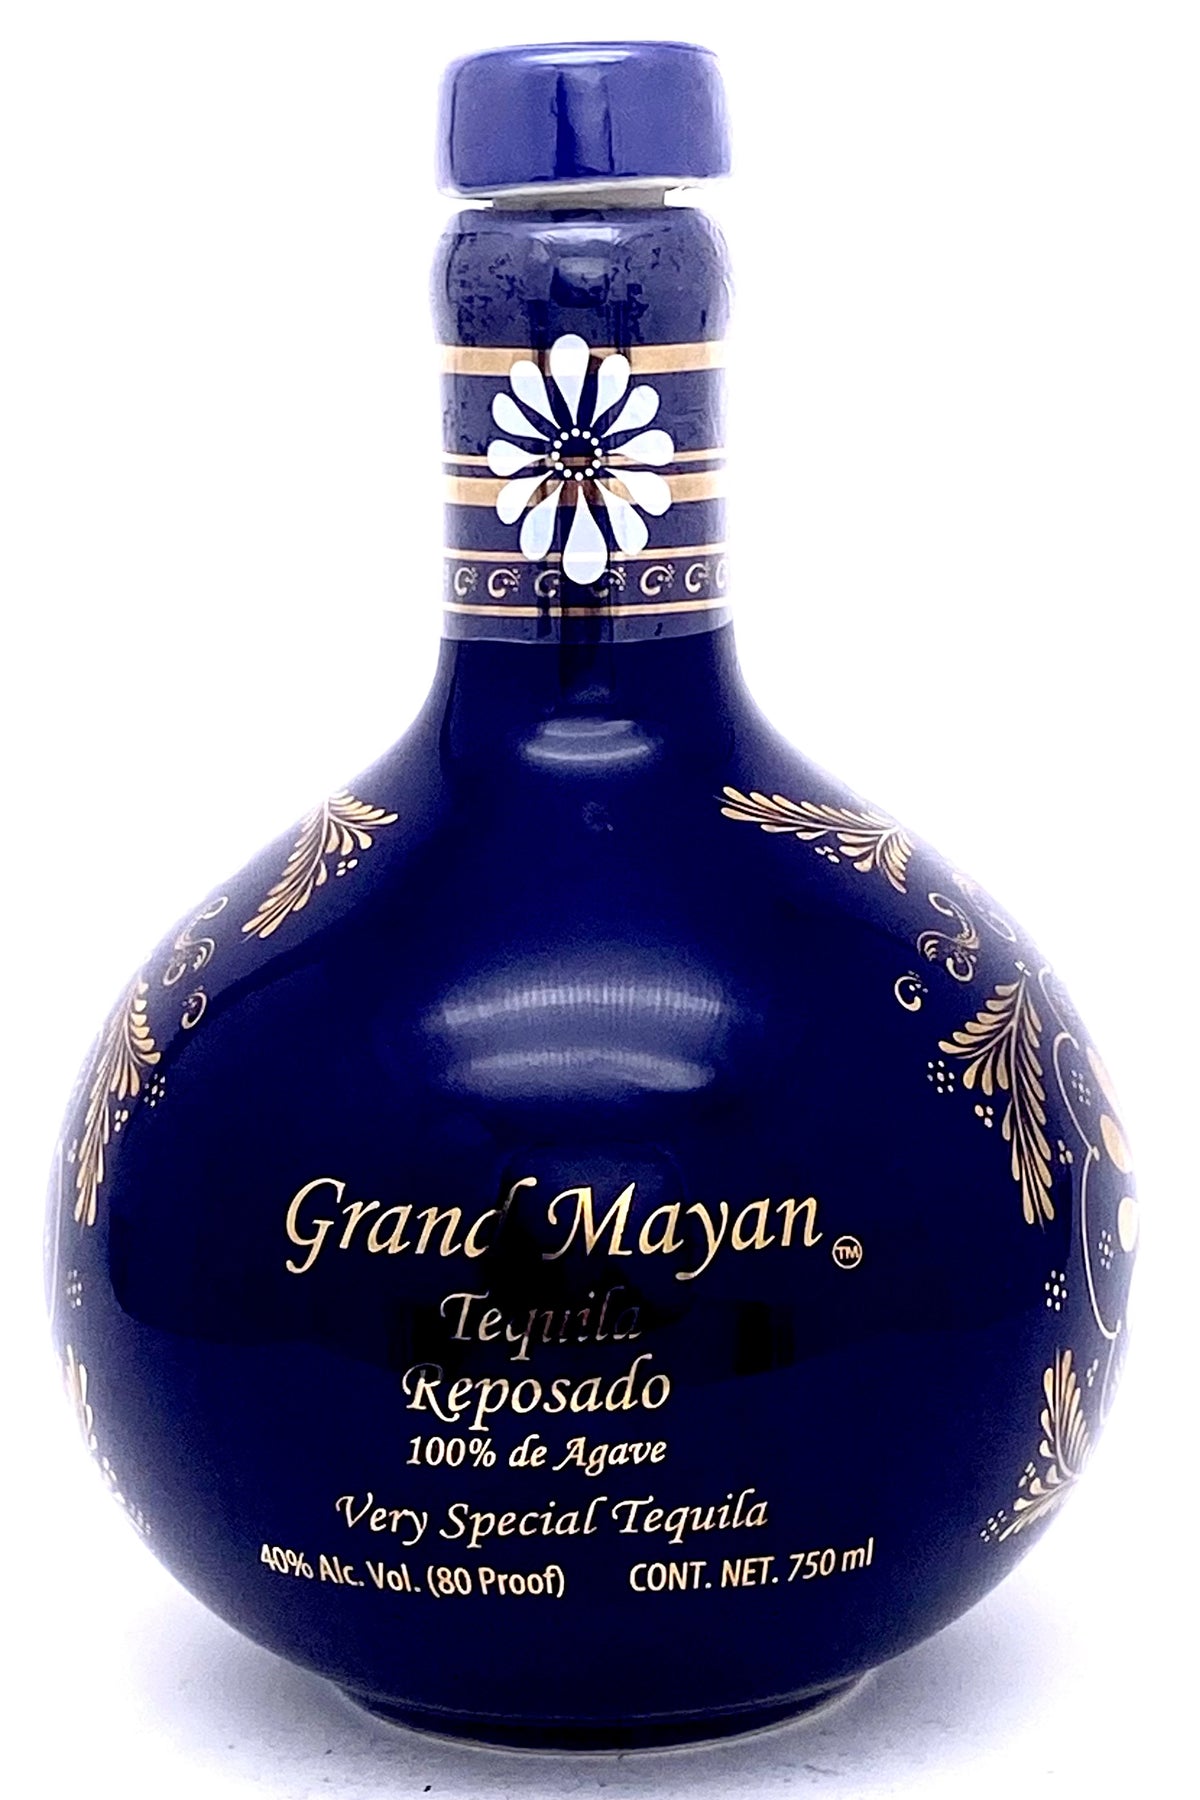 Grand Mayan Reposado Tequila